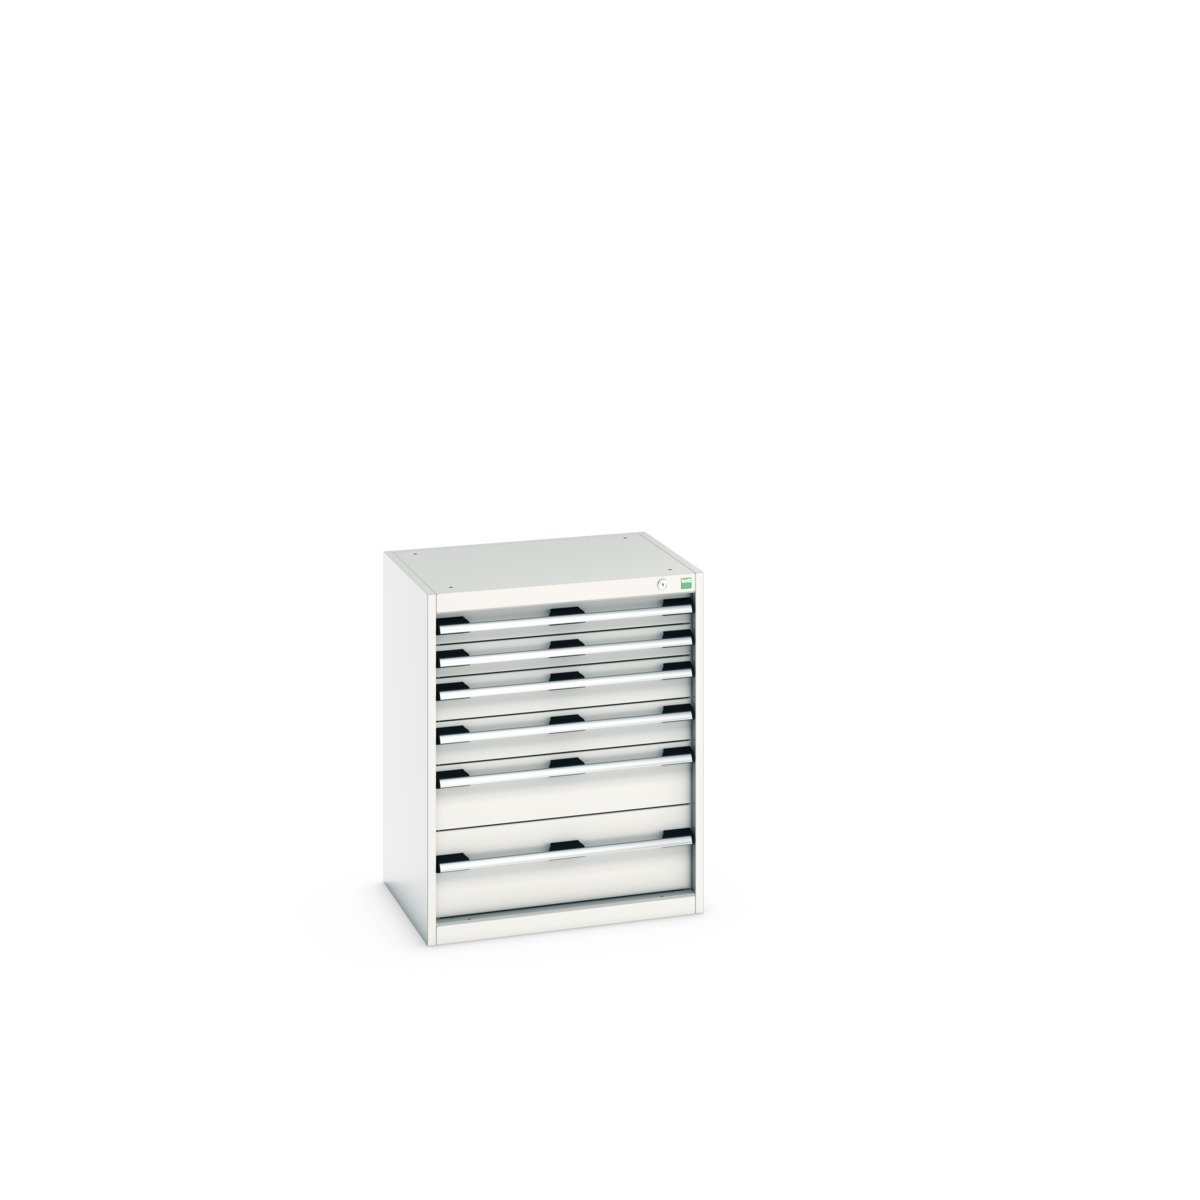 40011047.16V - cubio drawer cabinet